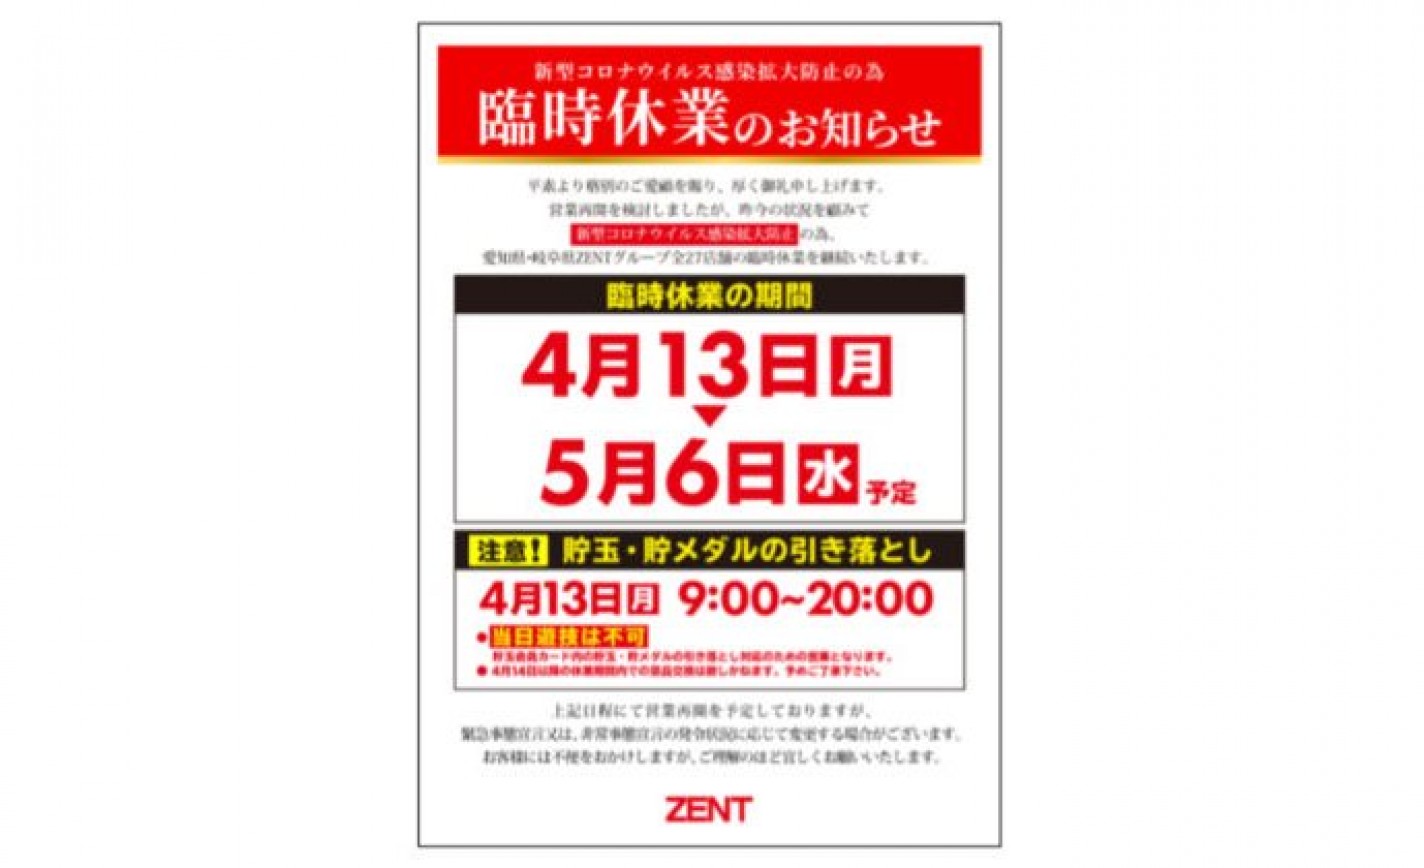 パチンコ《ZENT》、4月13日以降も愛知、岐阜の全27店舗の休業を継続 eyecatch-image